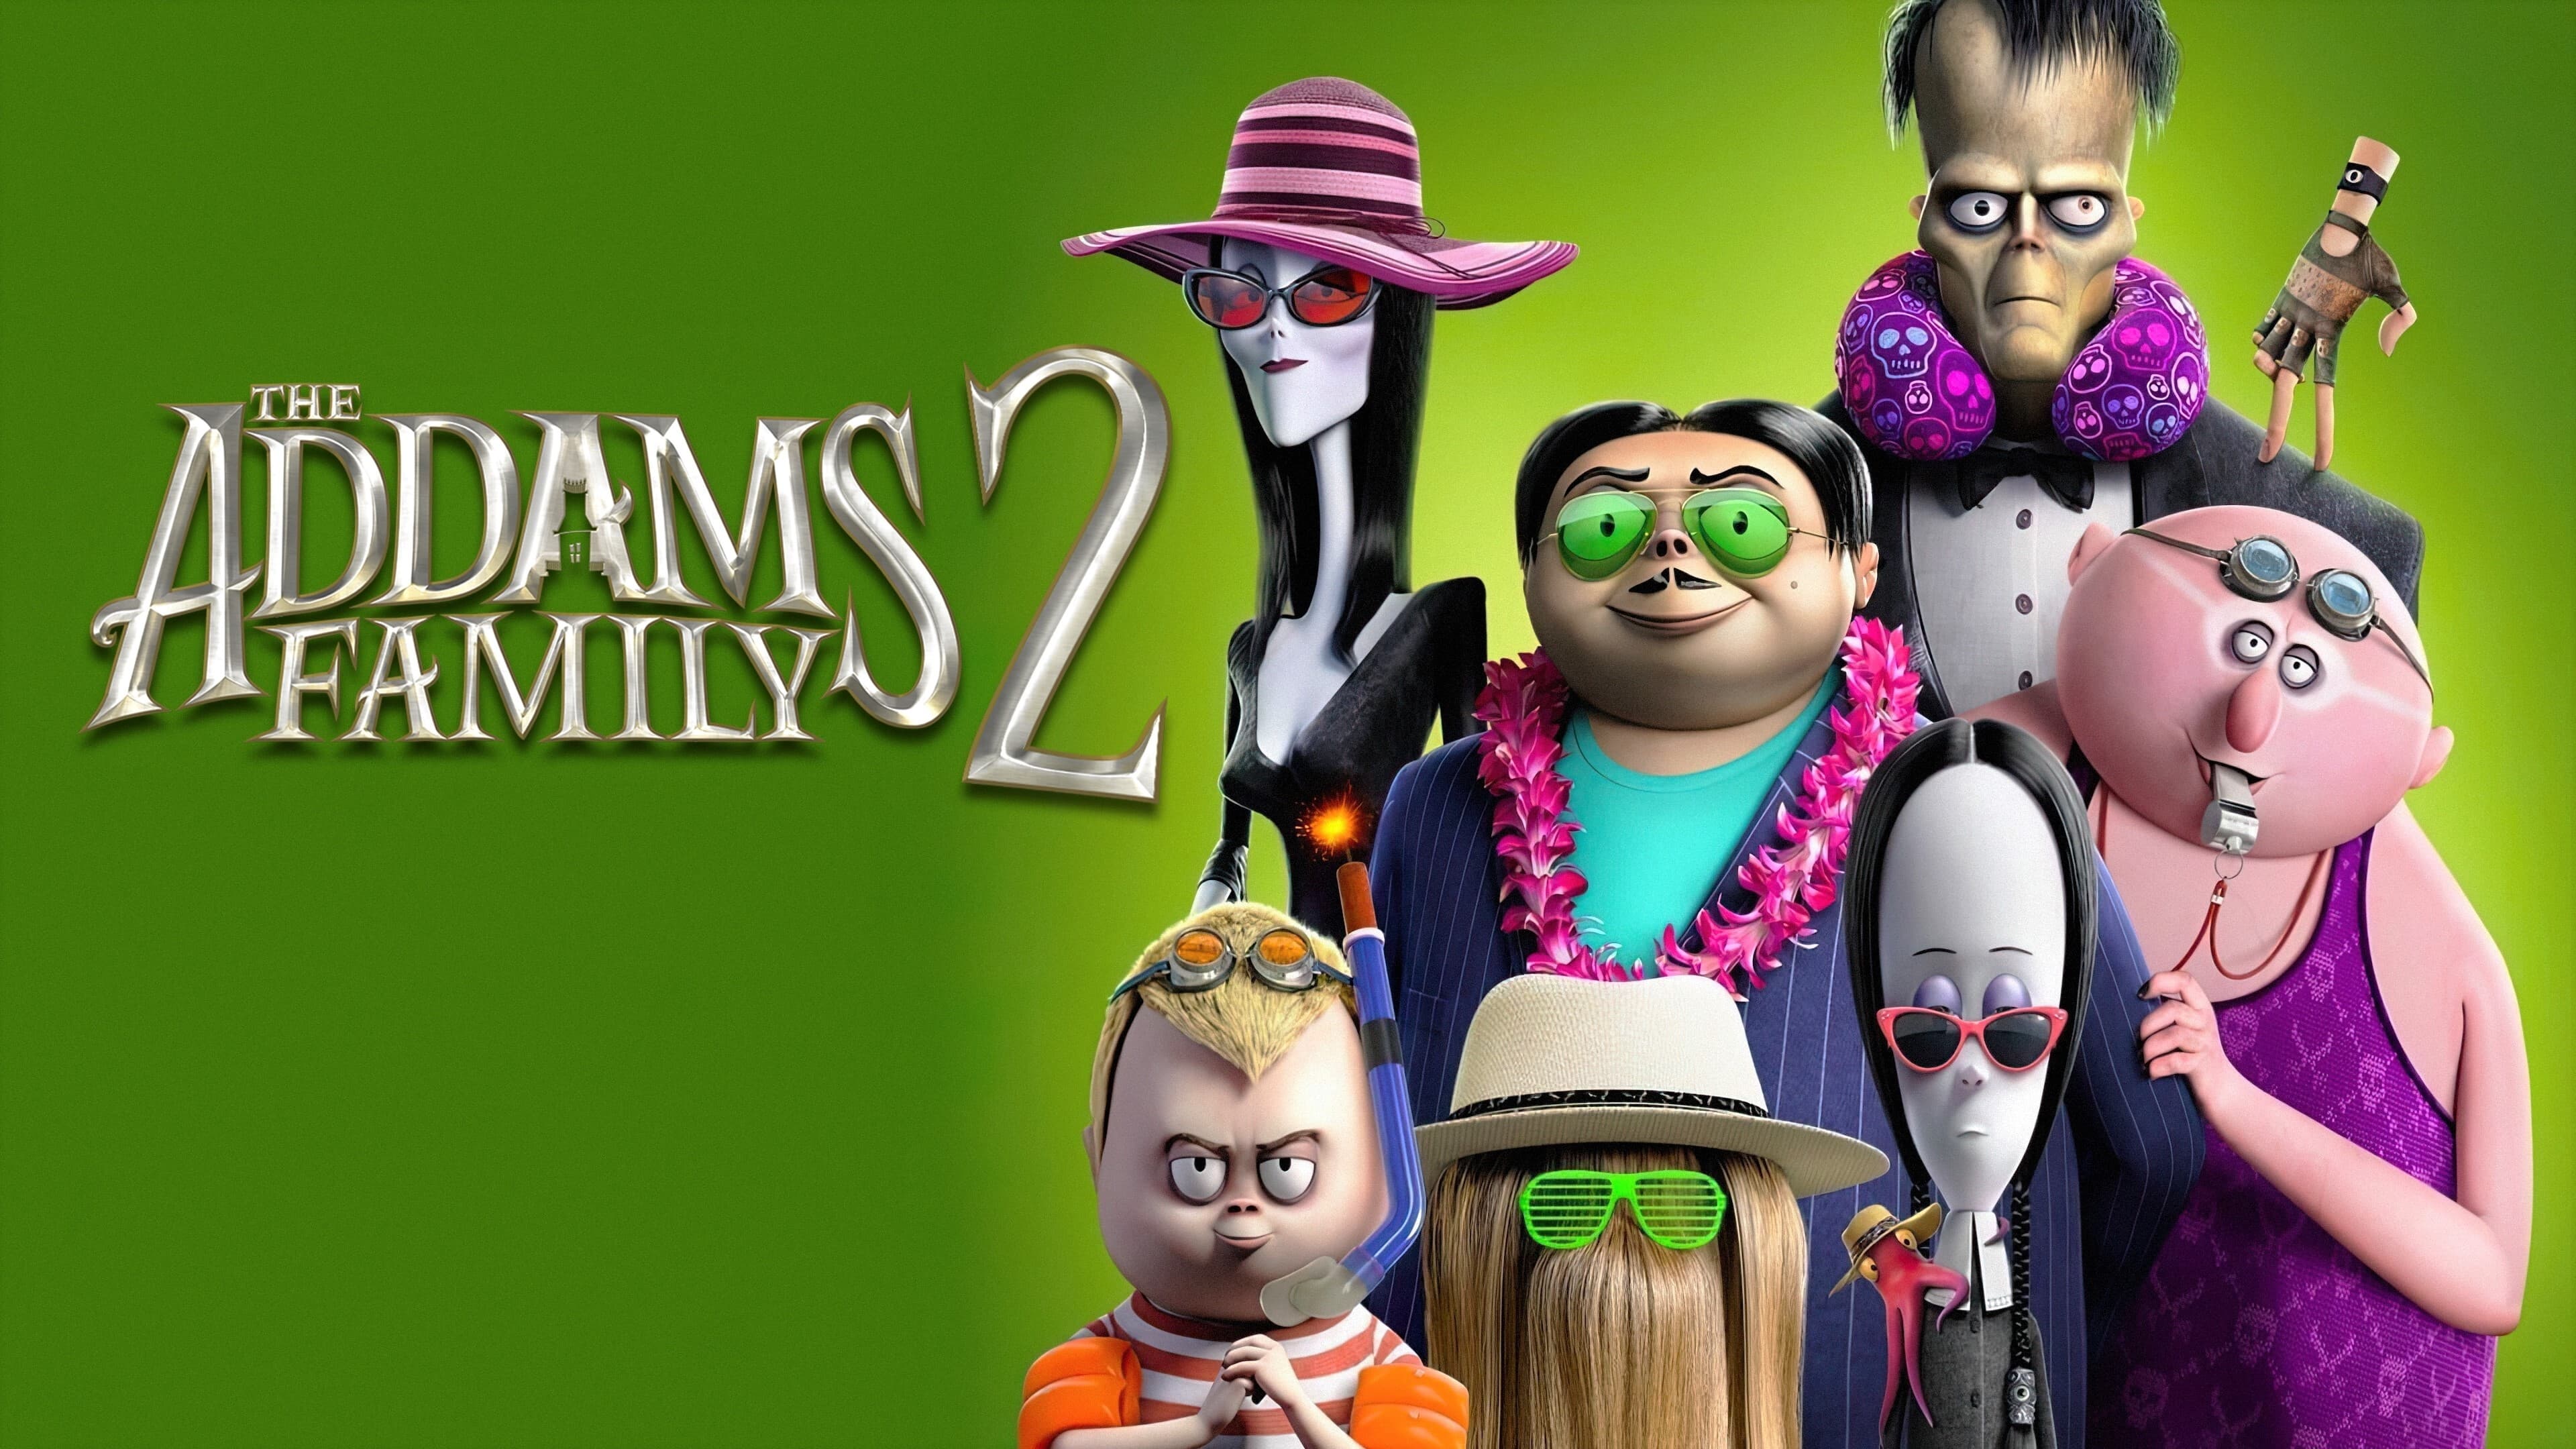 Die Addams Family 2 (2021)